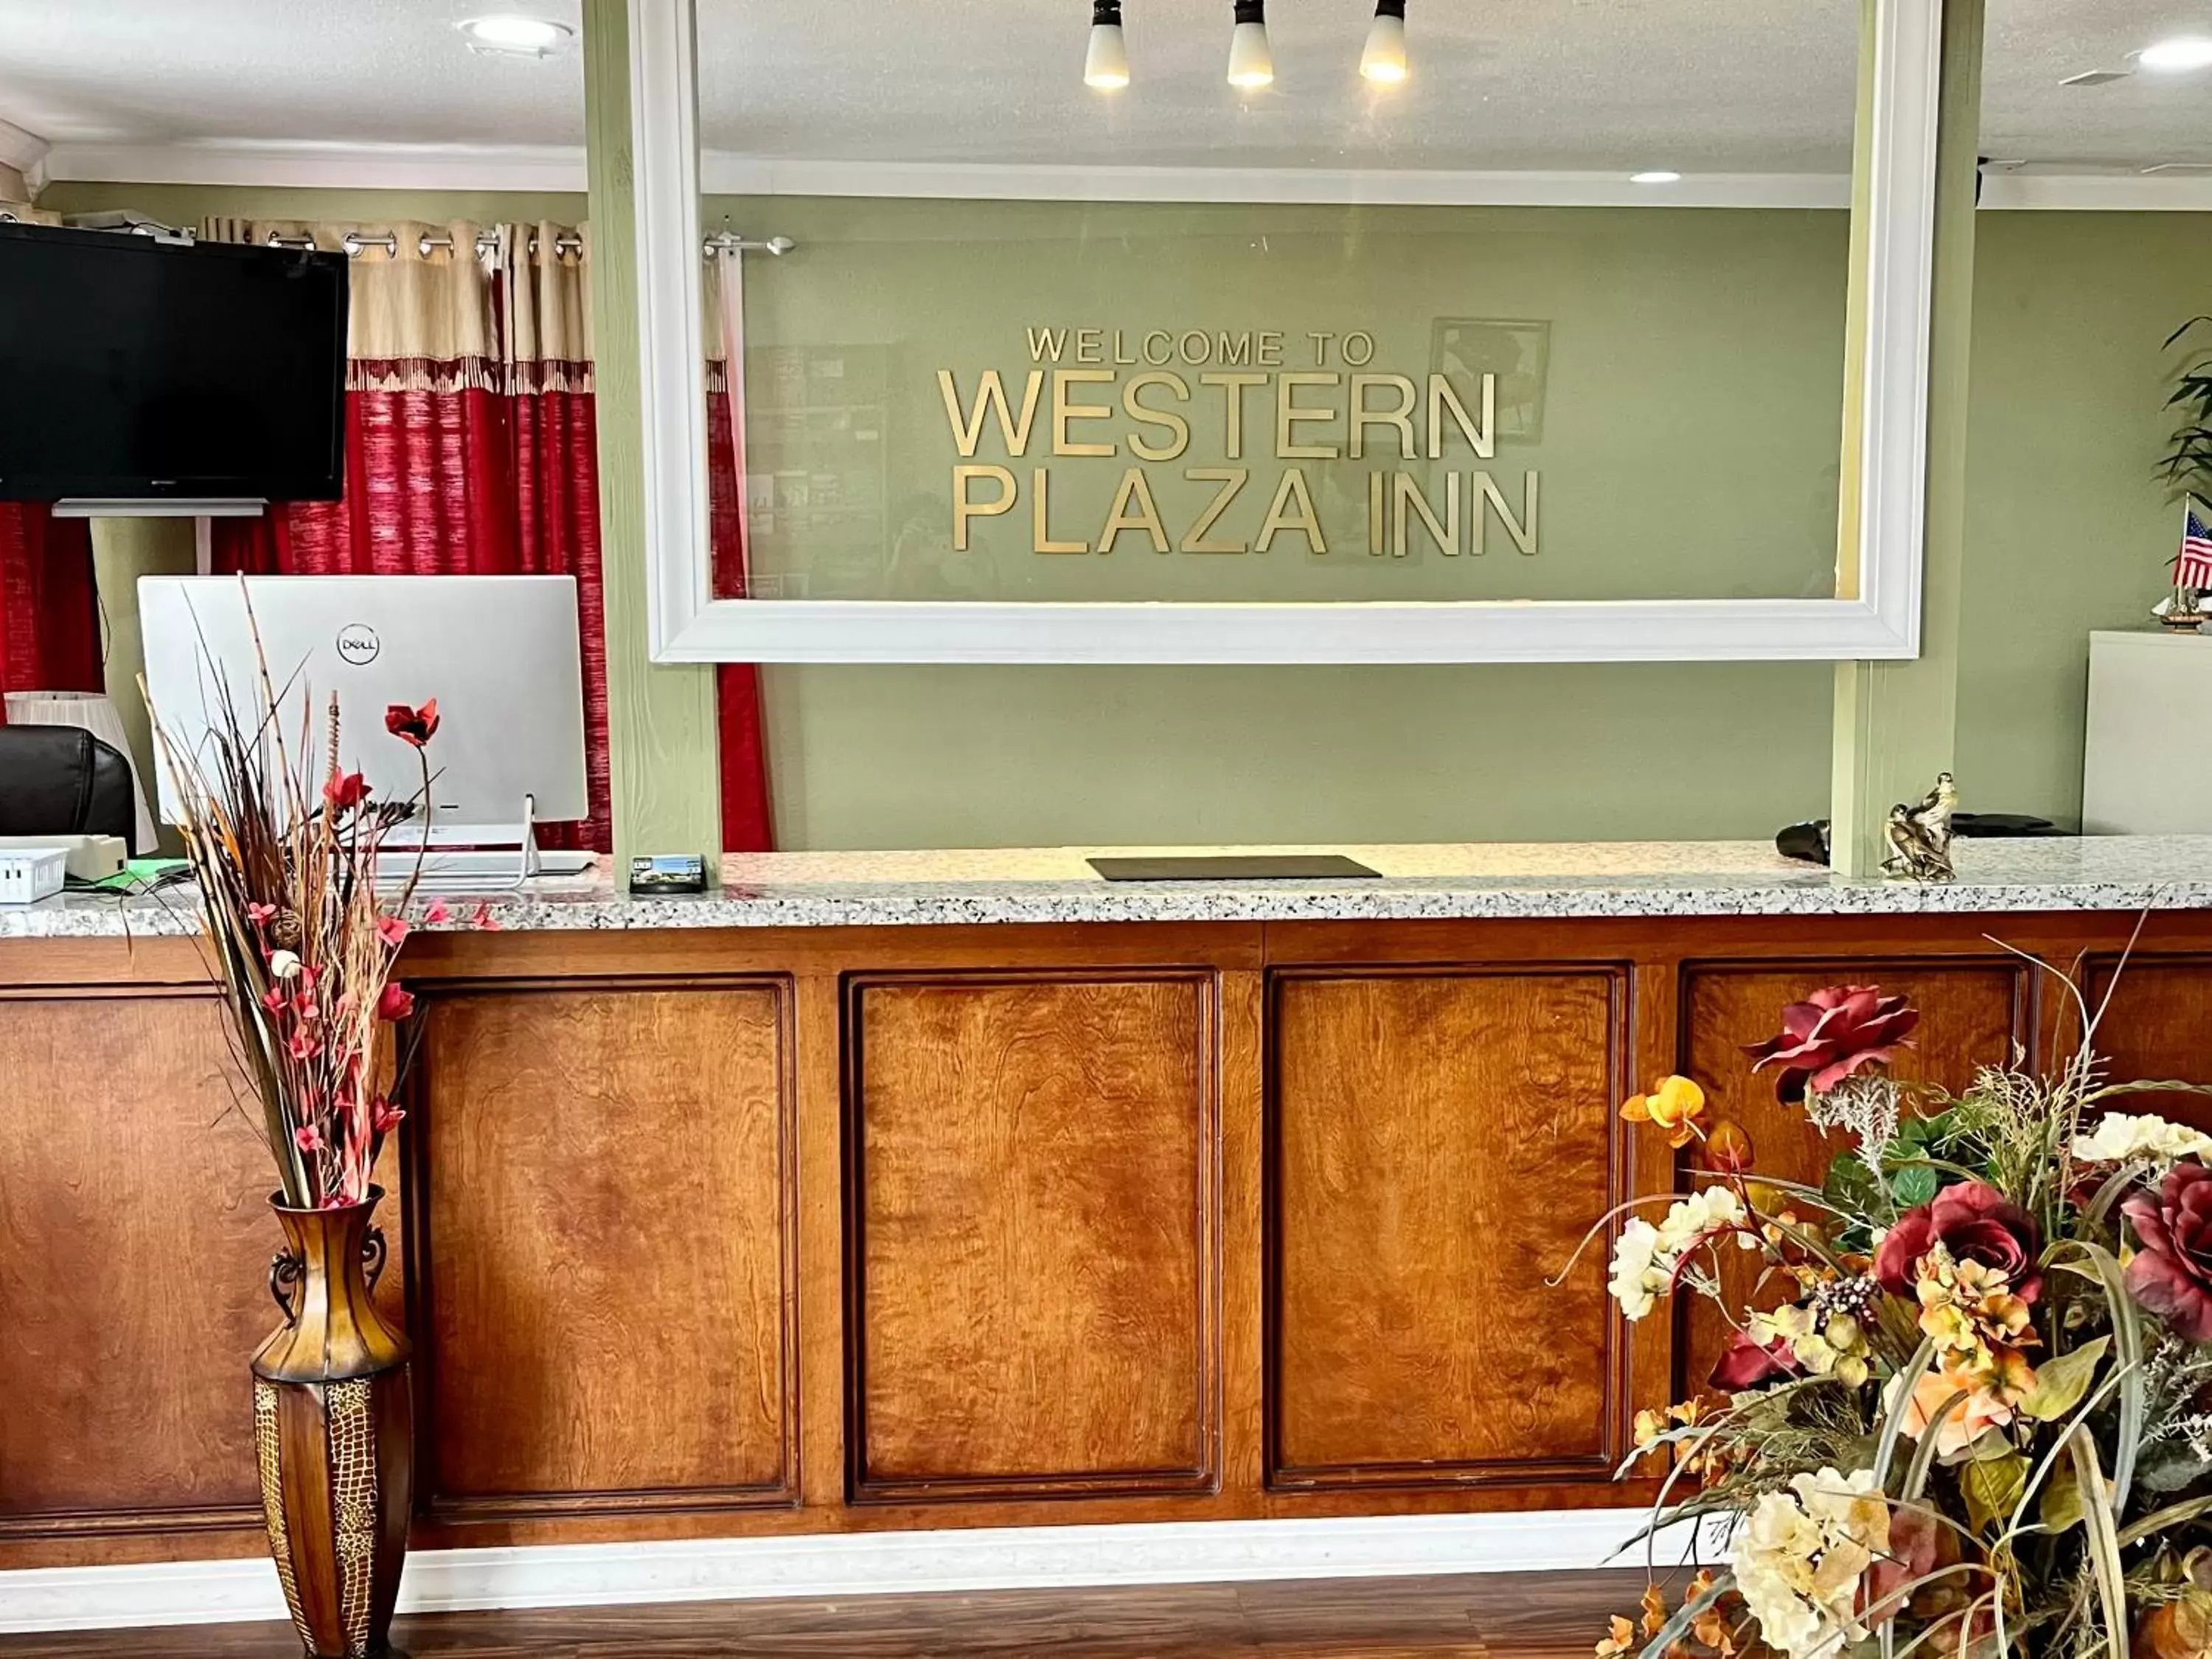 Lobby or reception, Lobby/Reception in Western Plaza Inn